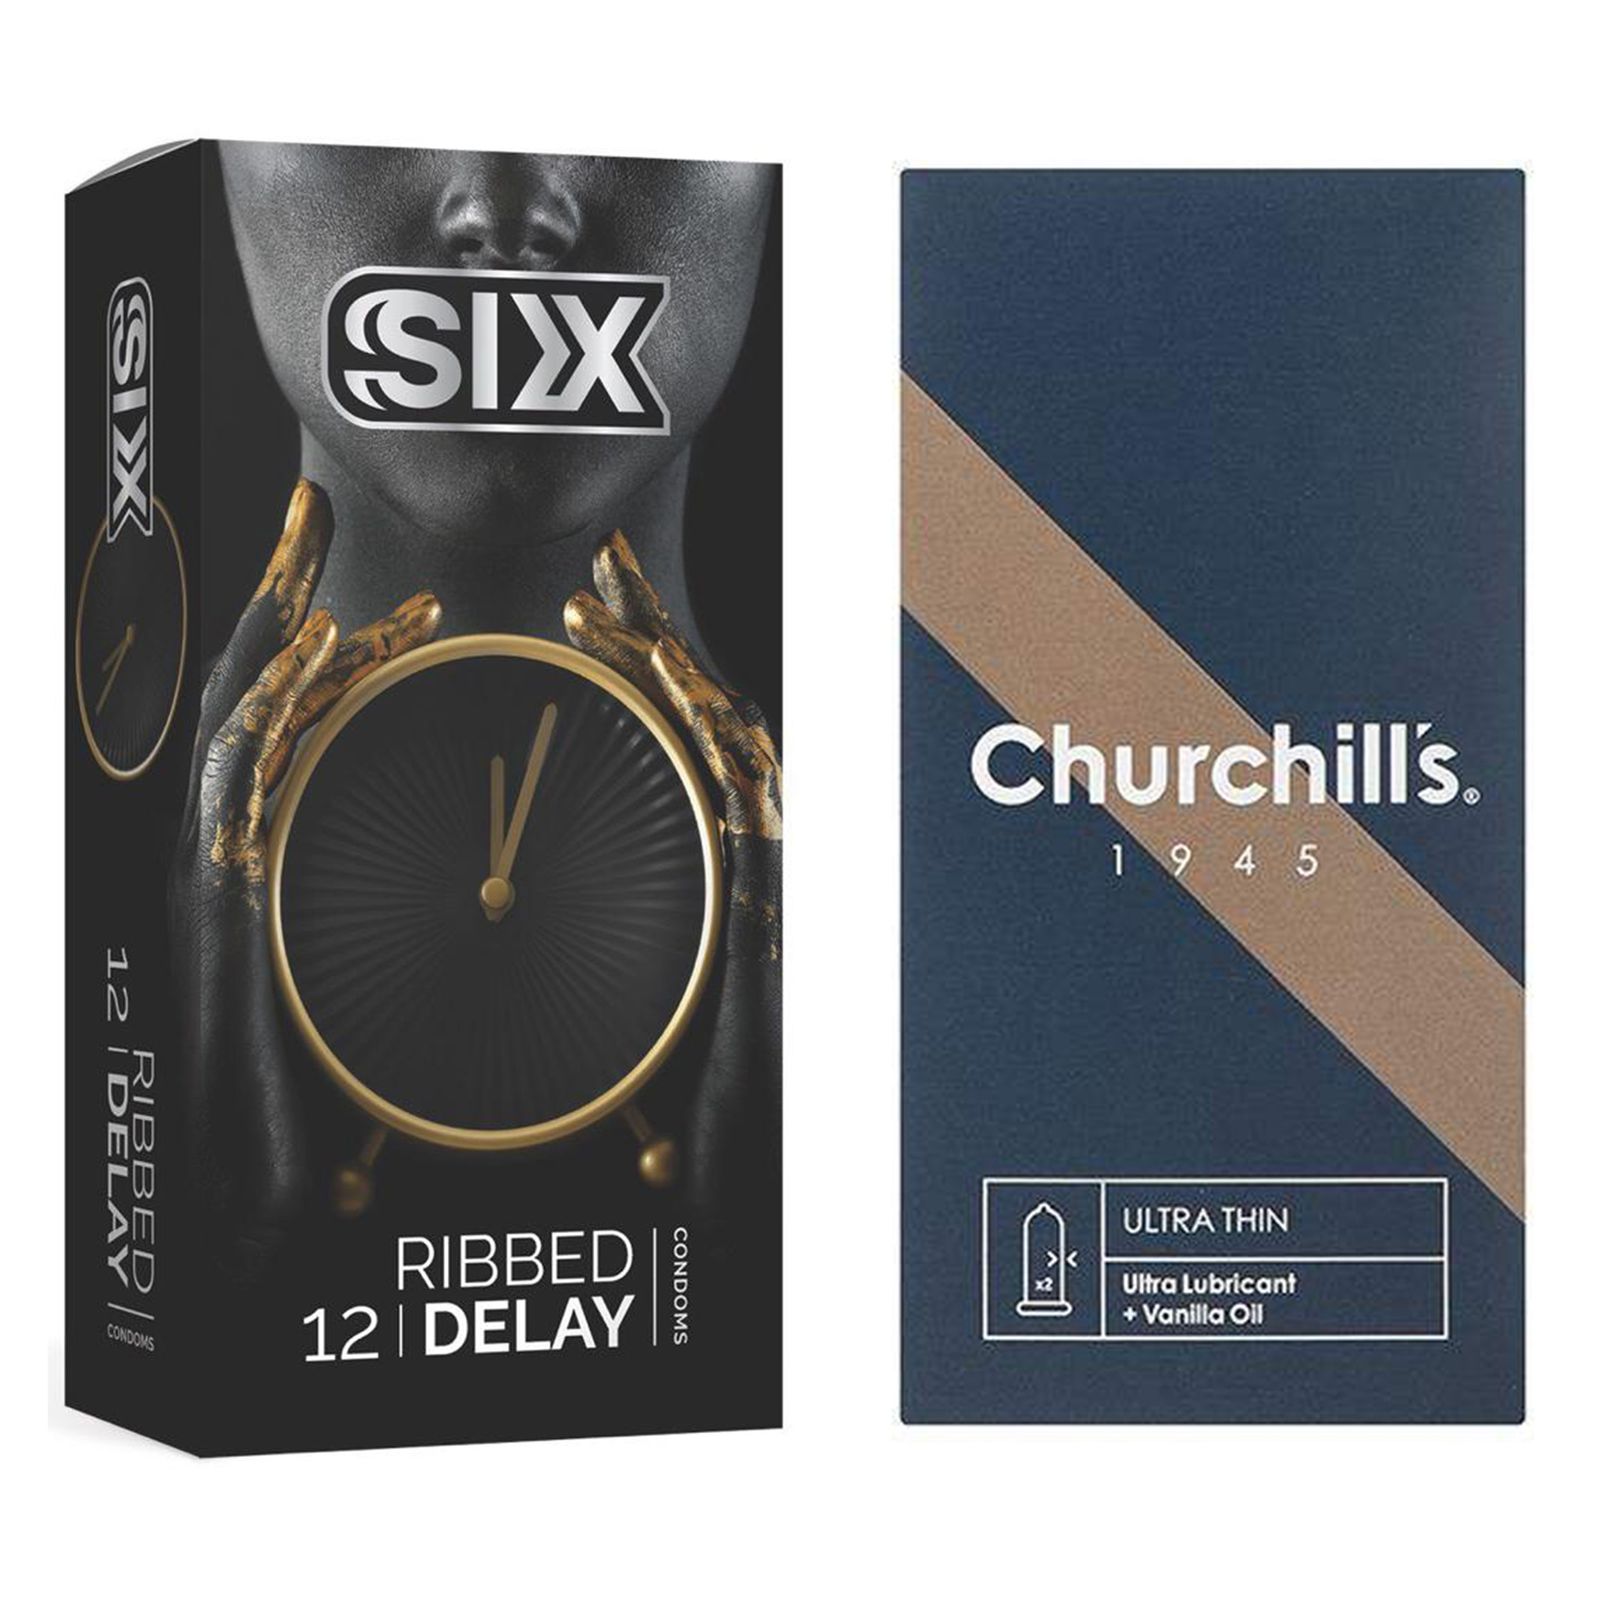 کاندوم چرچیلز مدل Ultra Thin بسته 12 عددی به همراه کاندوم سیکس مدل تاخیری شیاردار بسته 12 عددی -  - 1